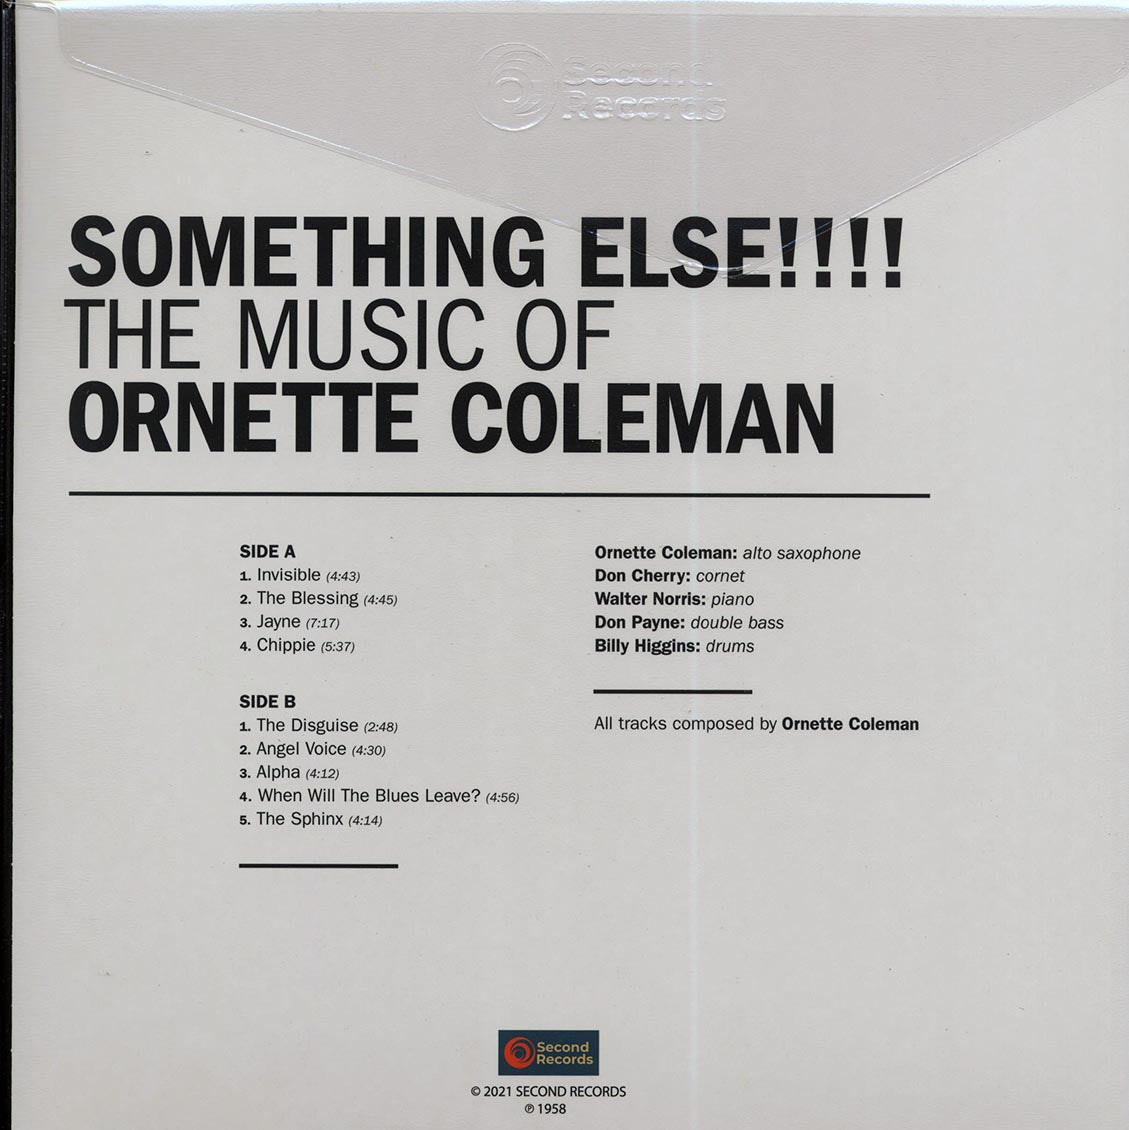 Ornette Coleman - Something Else!!! The Music Of Ornette Coleman (180g) (clear vinyl) - Vinyl LP, LP